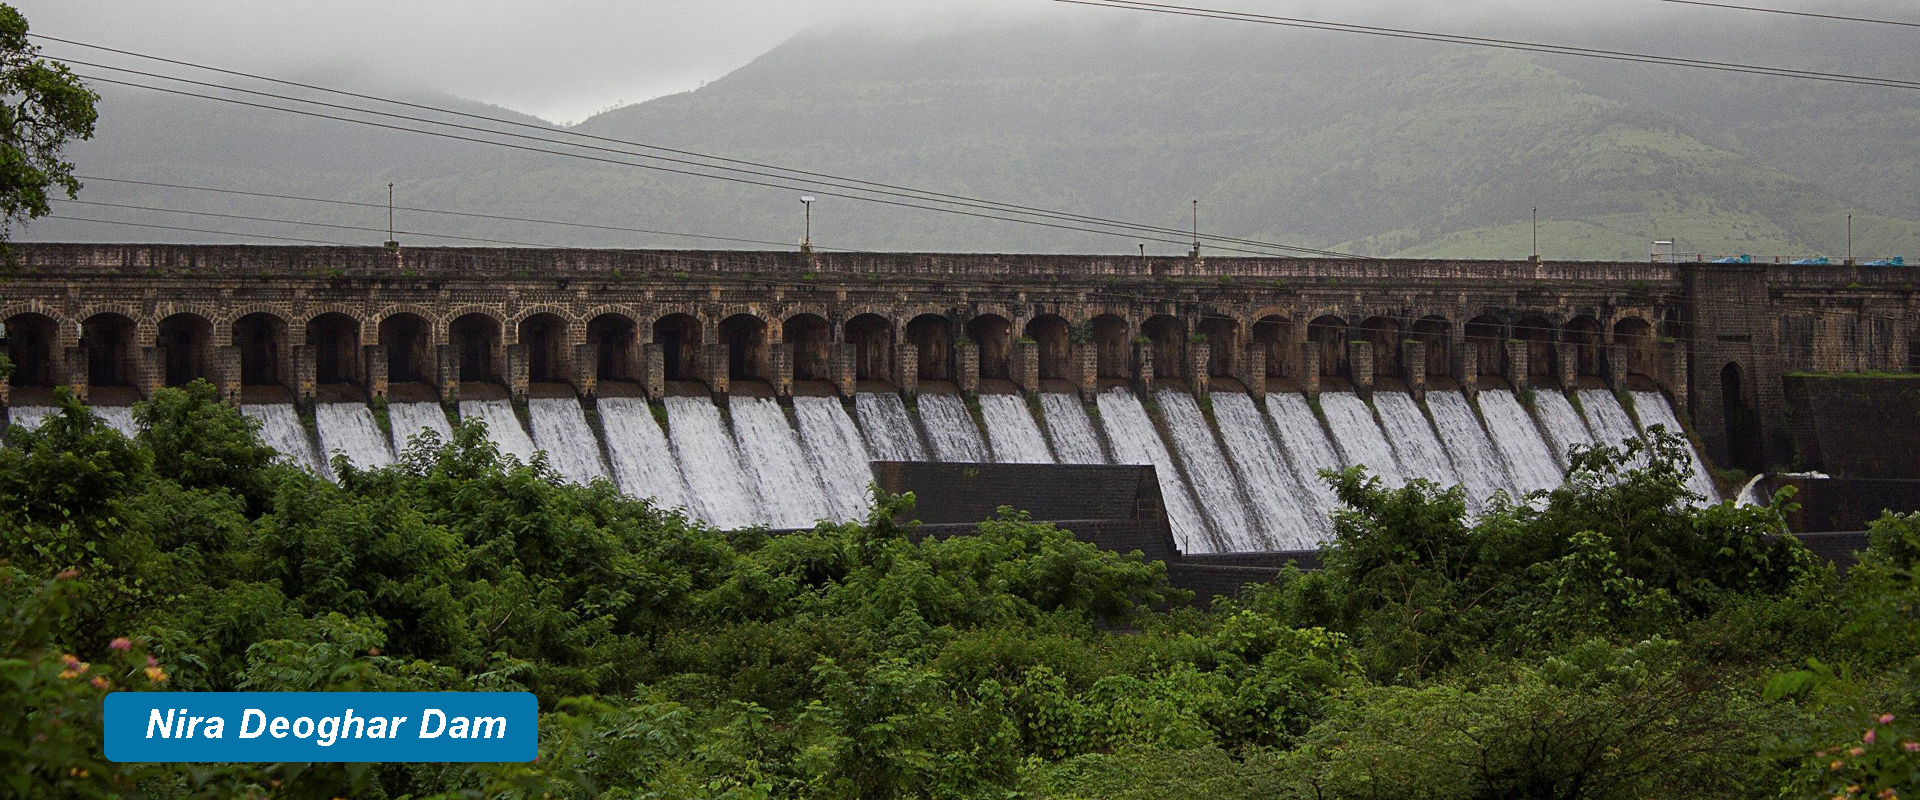 Nira-Deoghar-Dam